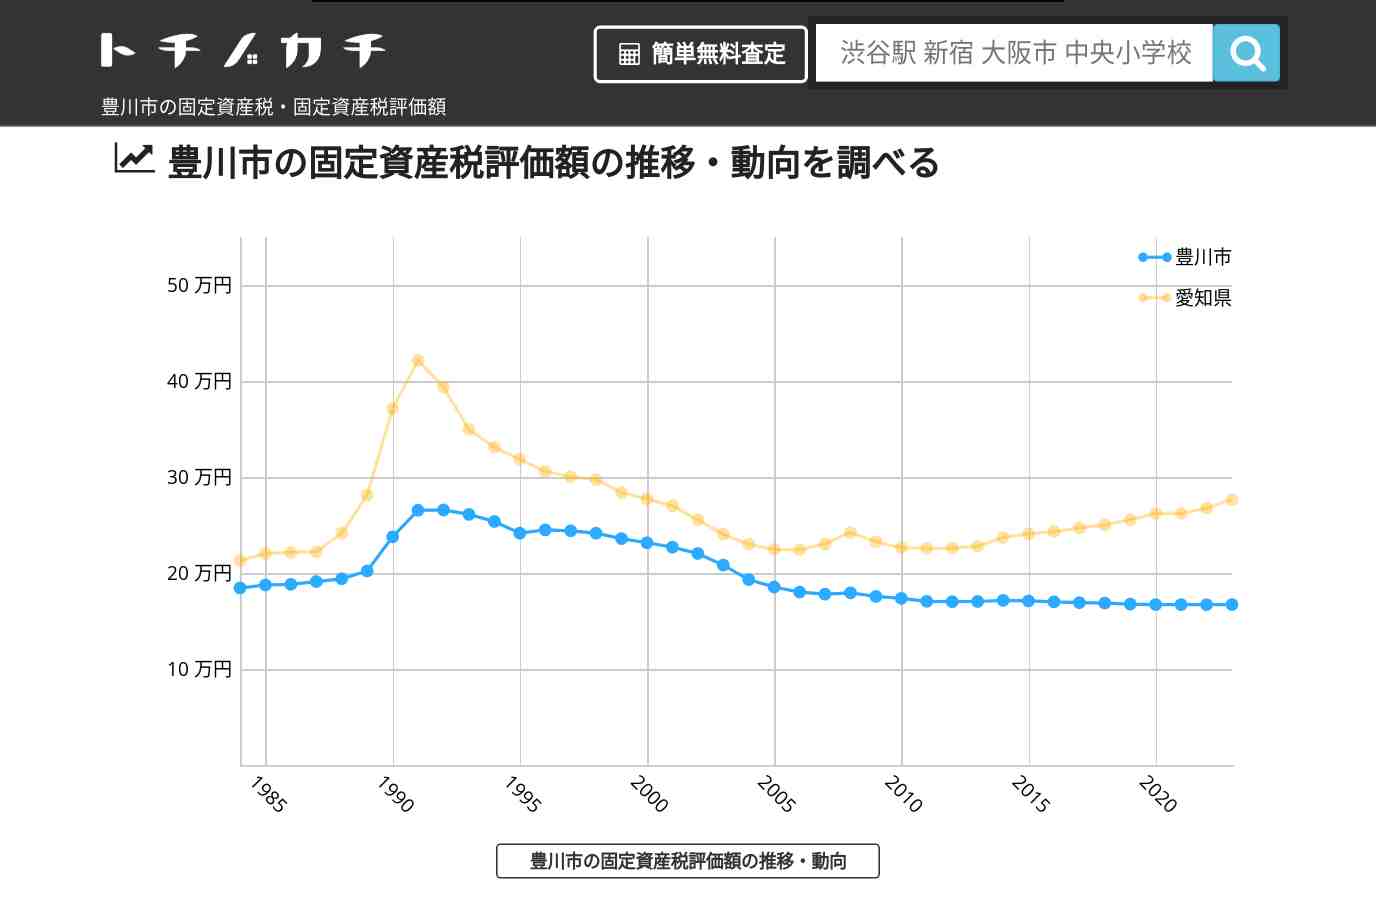 中部中学校(愛知県 豊川市)周辺の固定資産税・固定資産税評価額 | トチノカチ